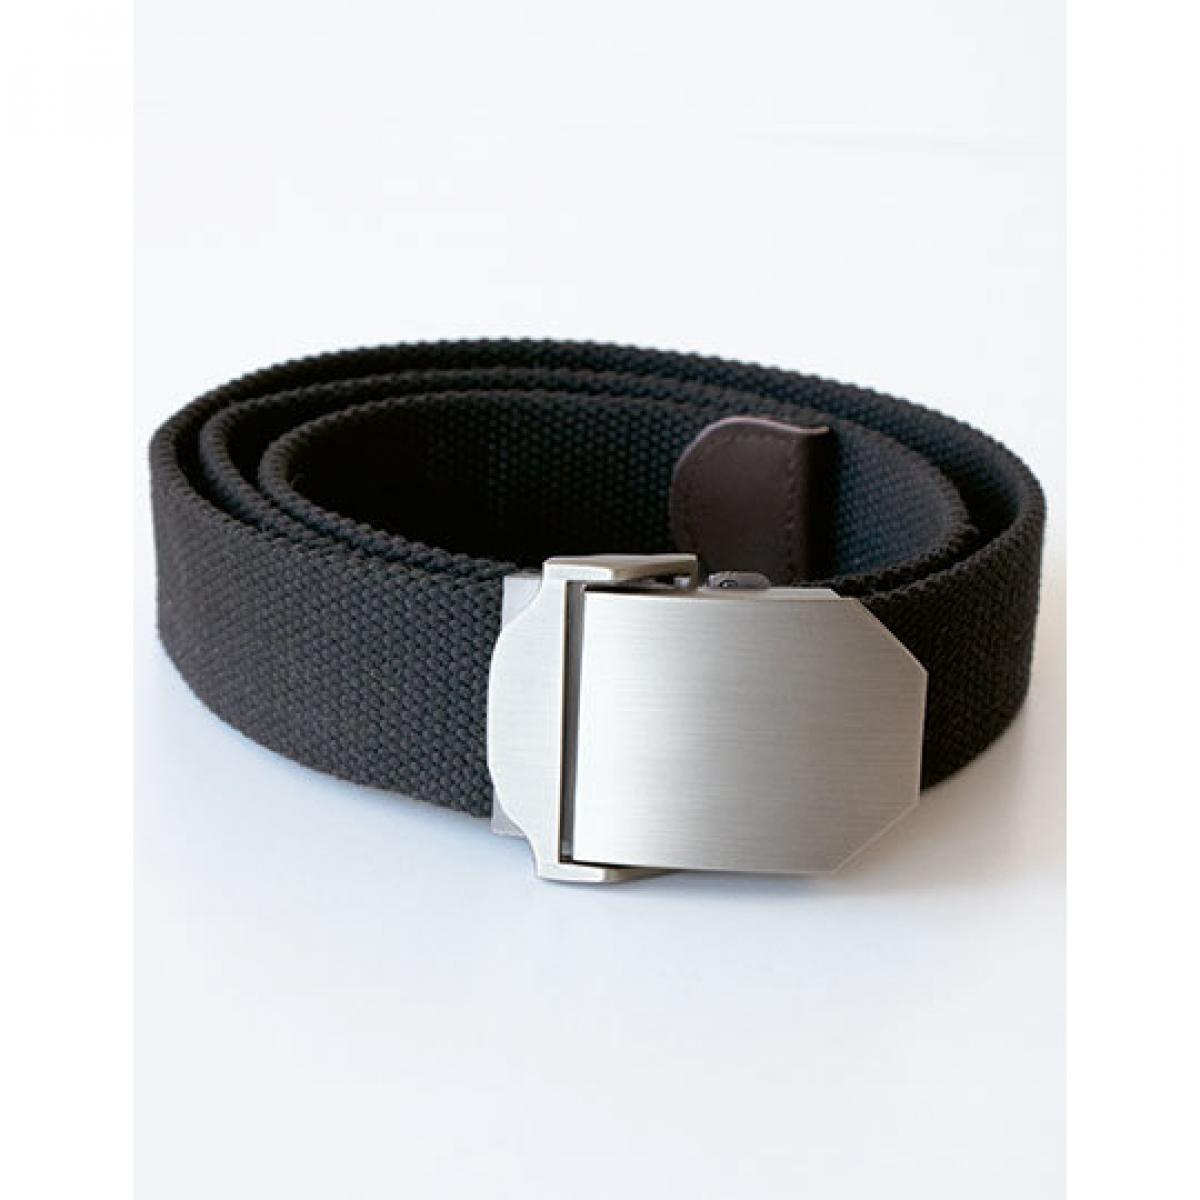 Hersteller: Korntex Herstellernummer: KXWWBN Artikelbezeichnung: Workwear Belt Classic, 140 cm L, selbst kürzbar, B 4 cm Farbe: Black